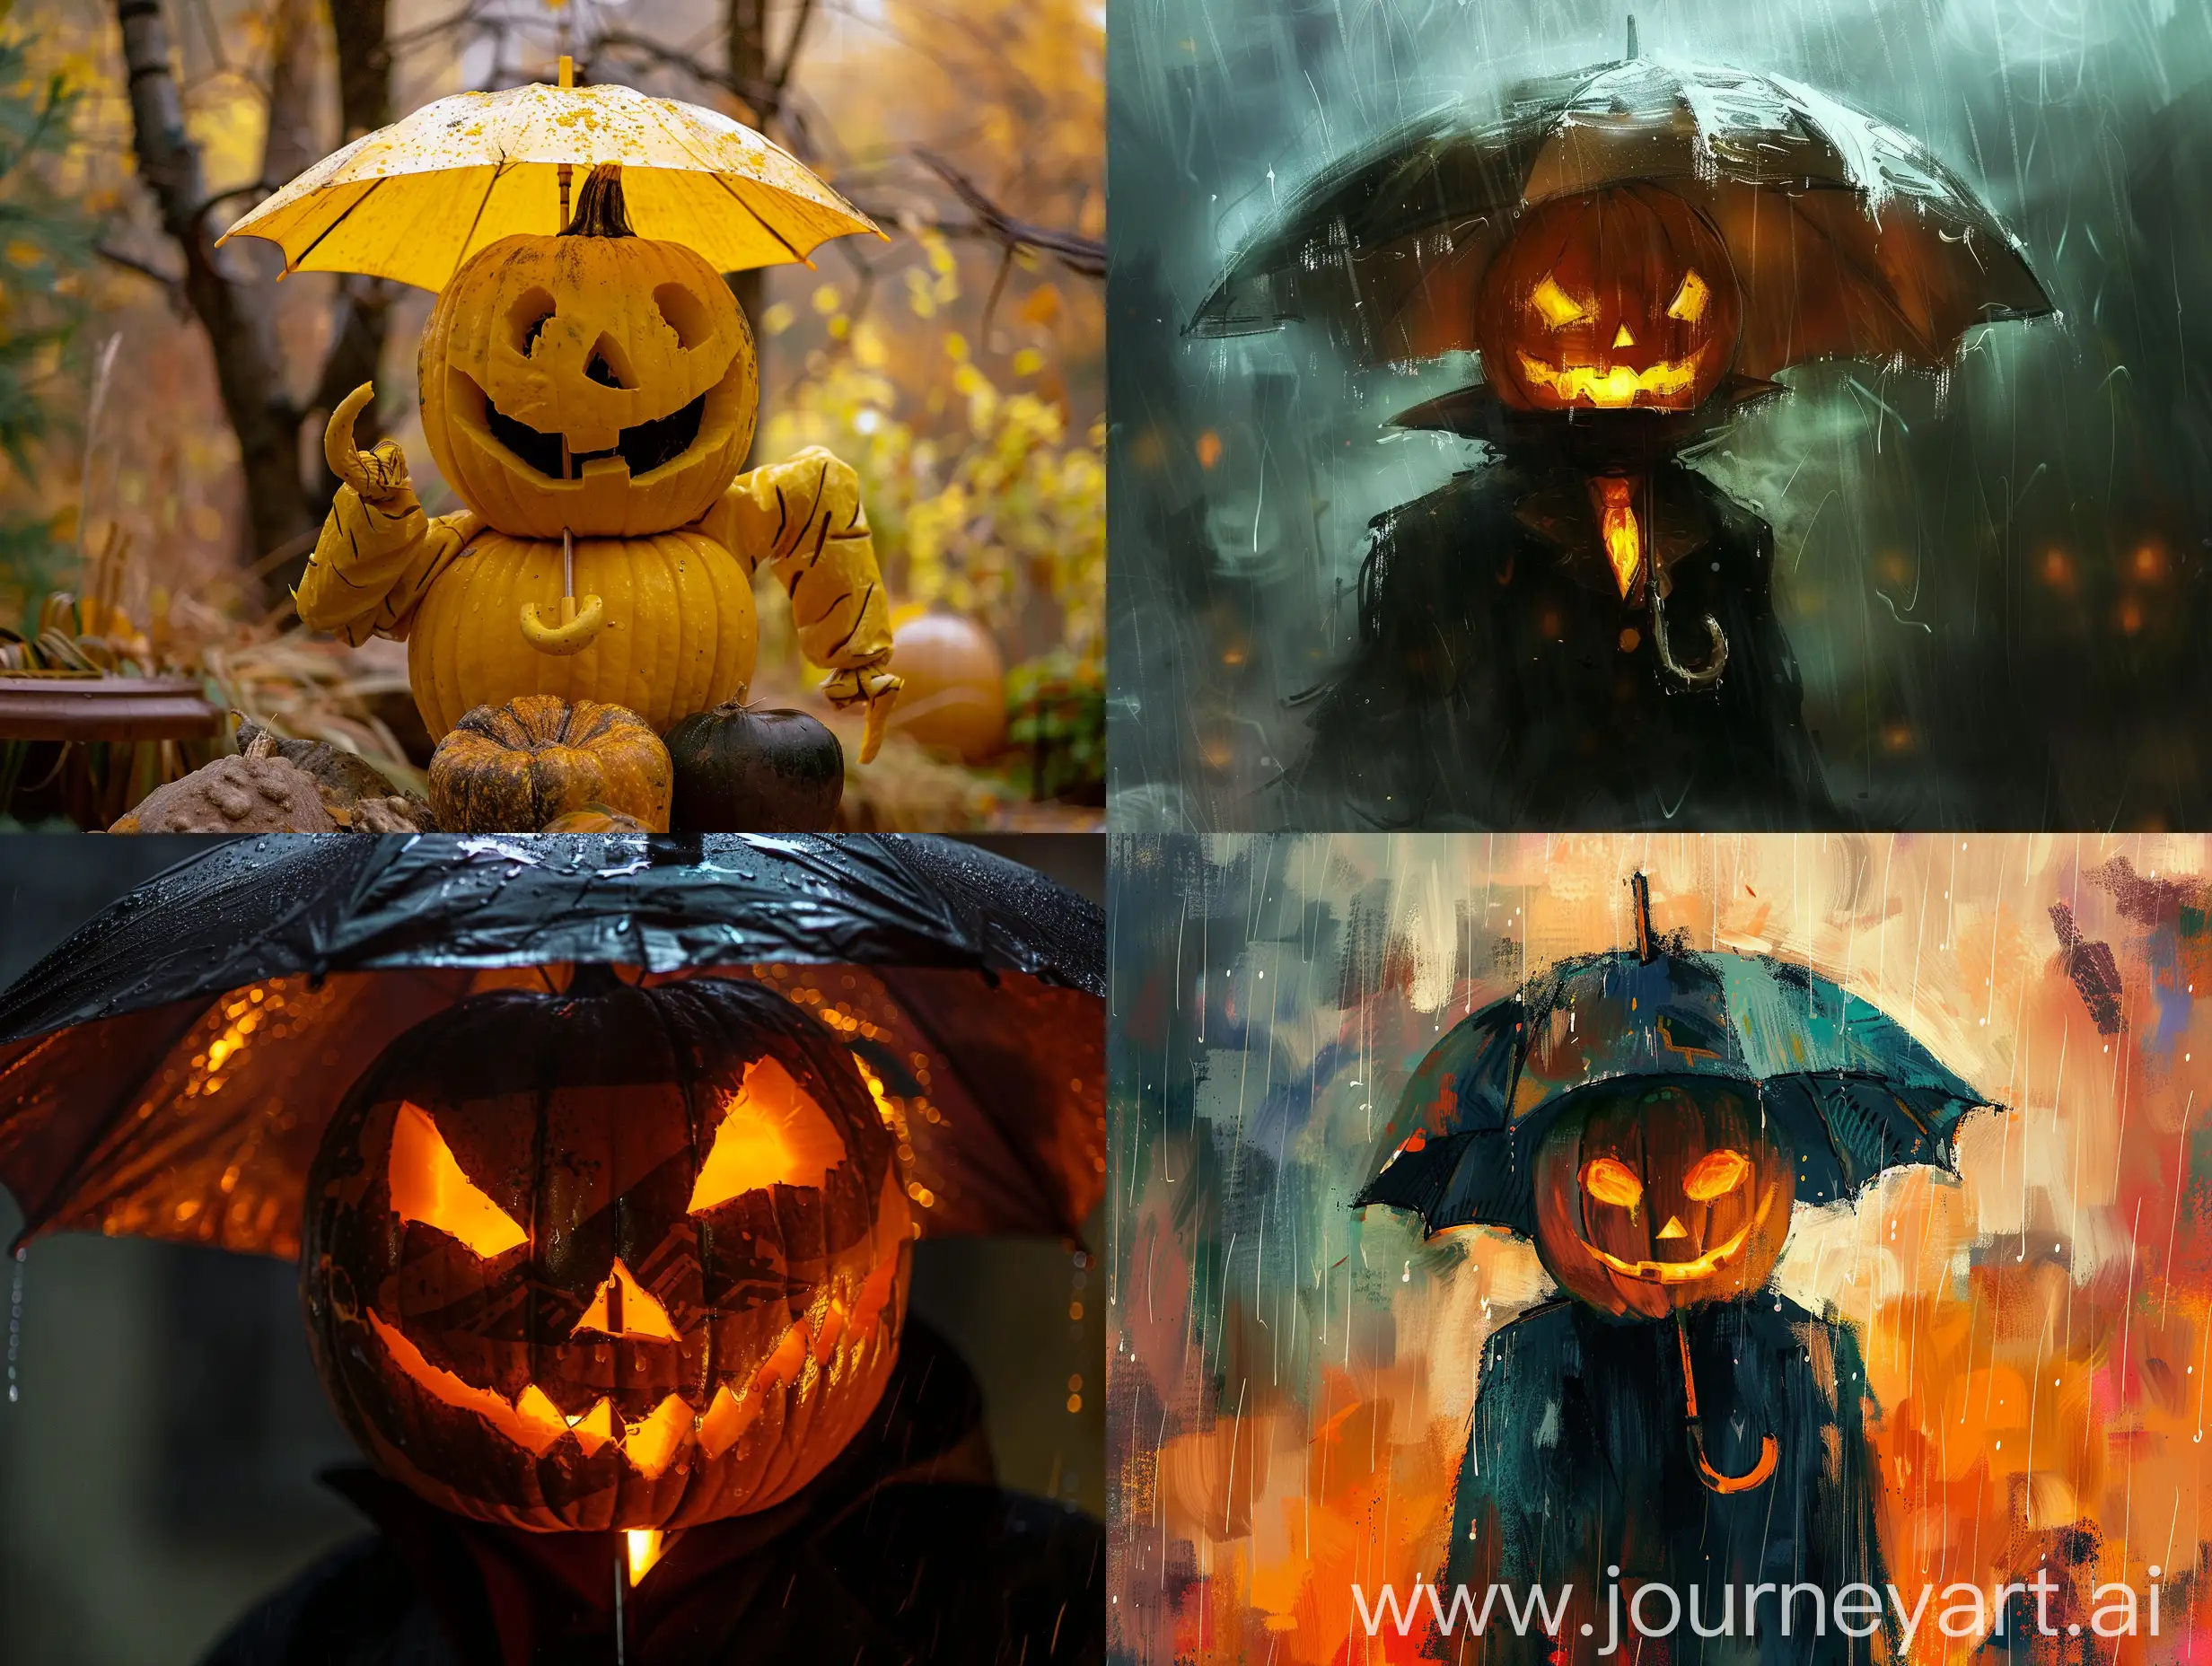 The Umbrella Pumpkin Man